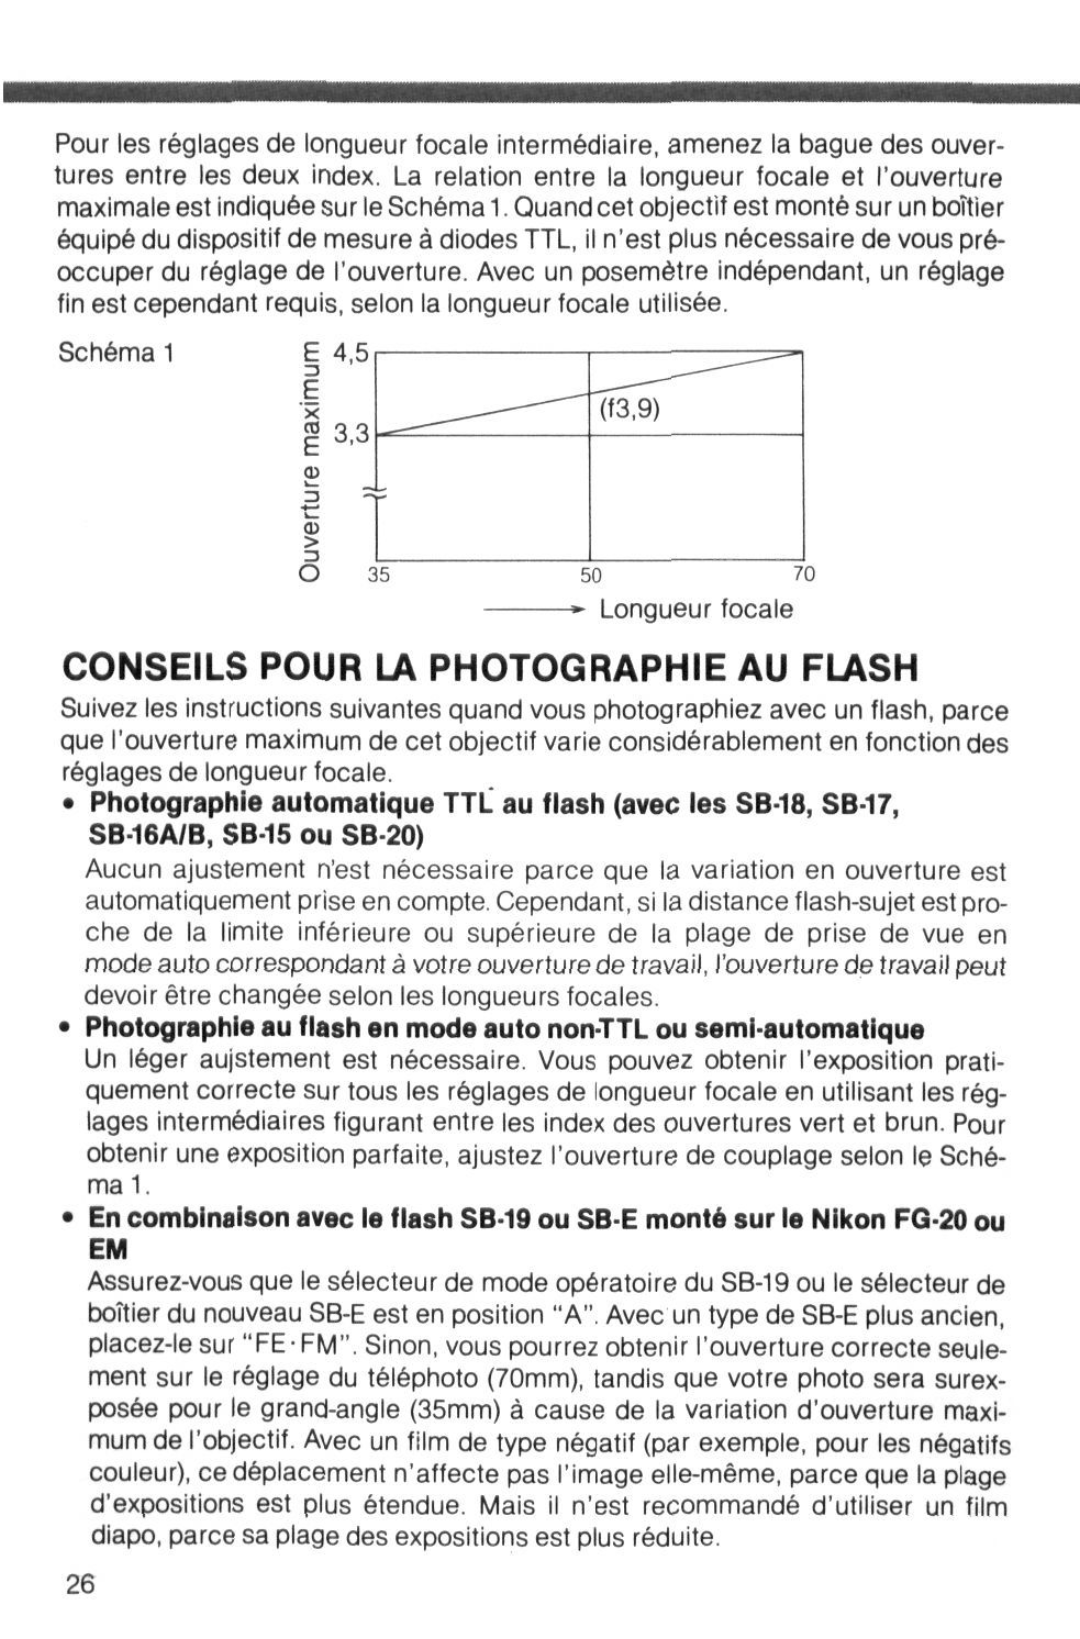 Nikon instruction manual Conseils Pour La Photographie Au Flash, 93.9, Longueur focale 